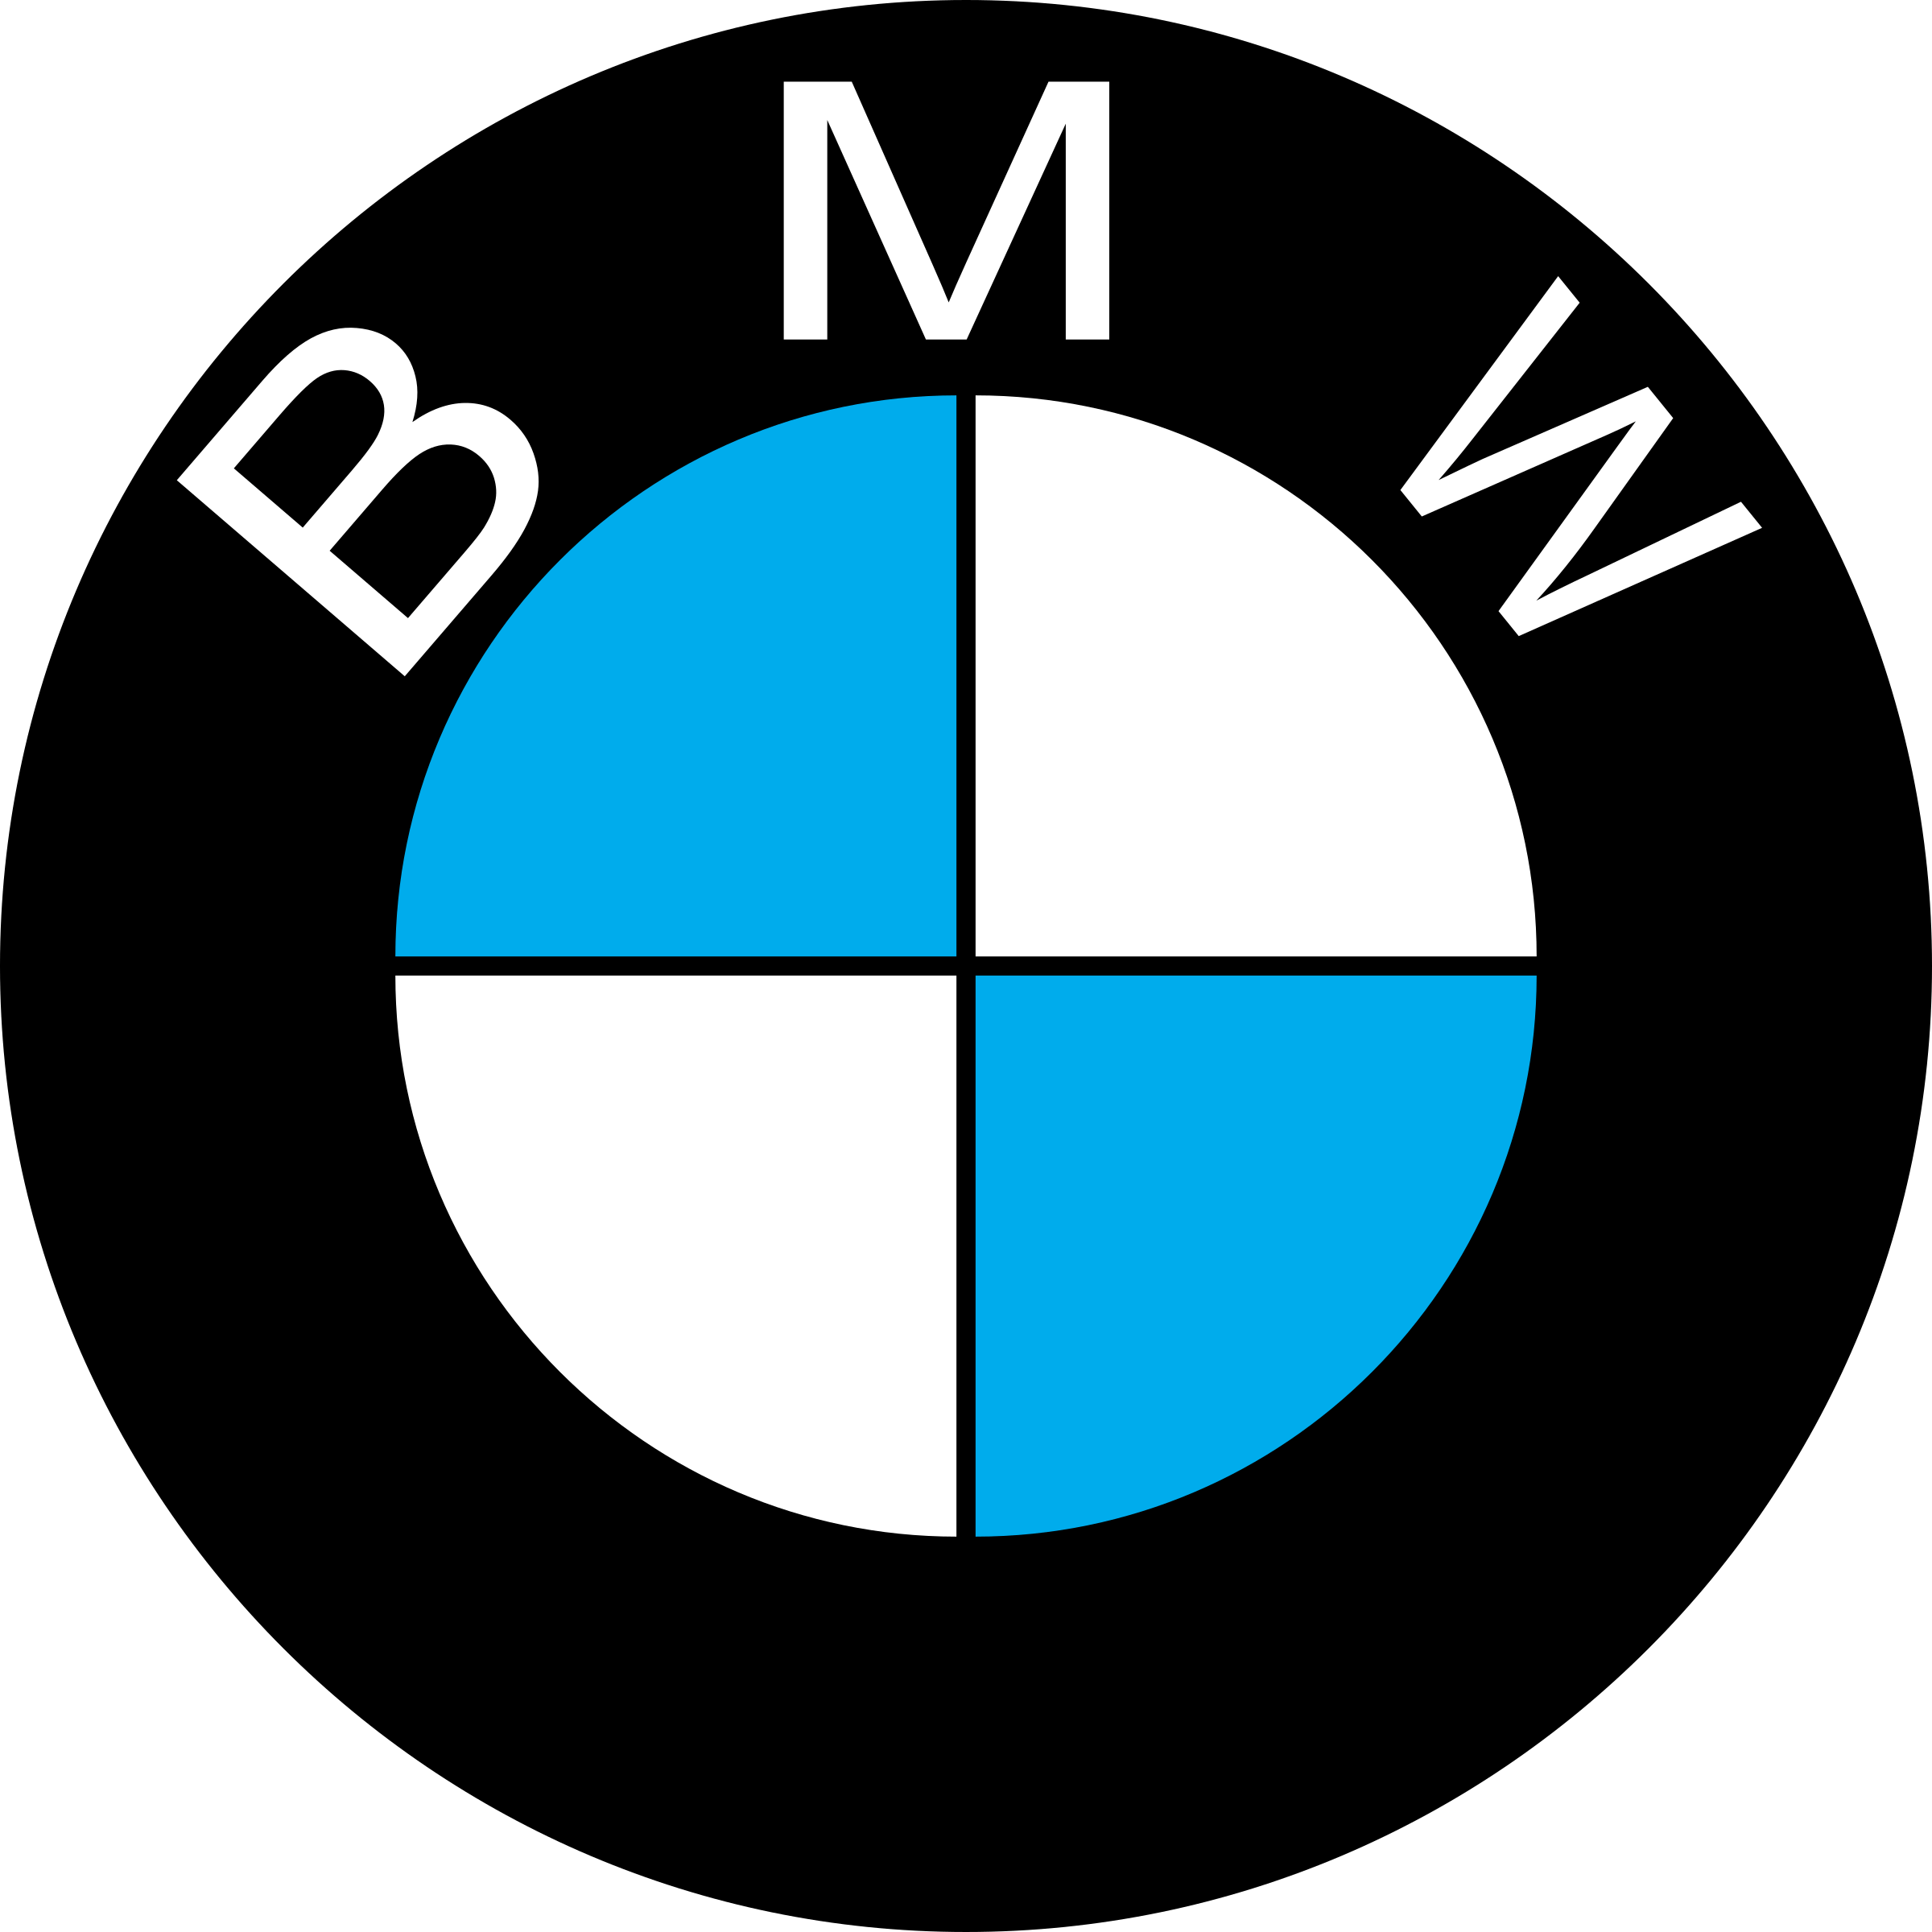 BWM Logo - BMW Logo PNG Transparent & SVG Vector